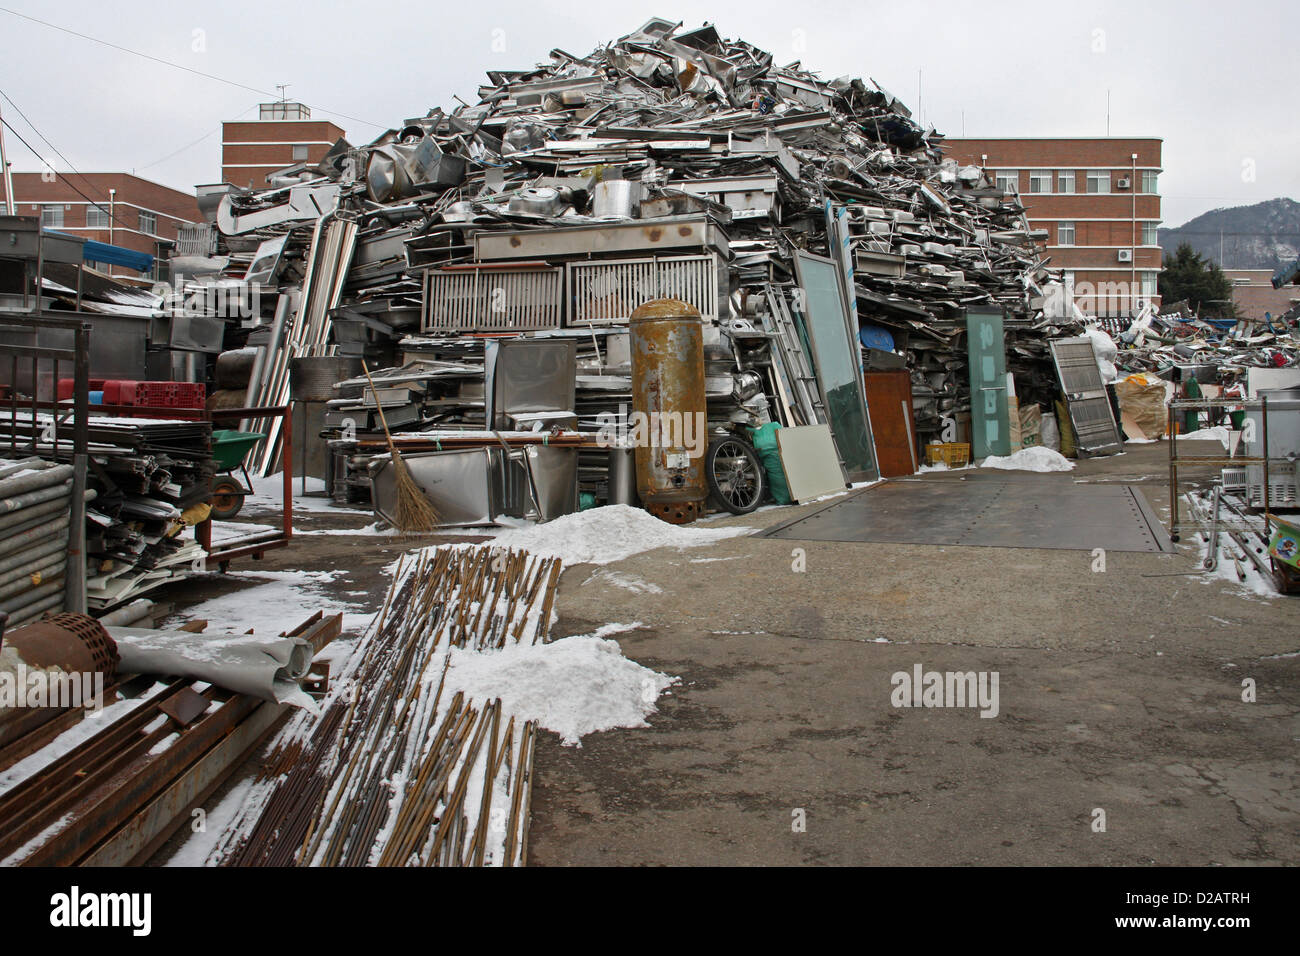 Scrapyard in Jeonju, South Korea Stock Photo